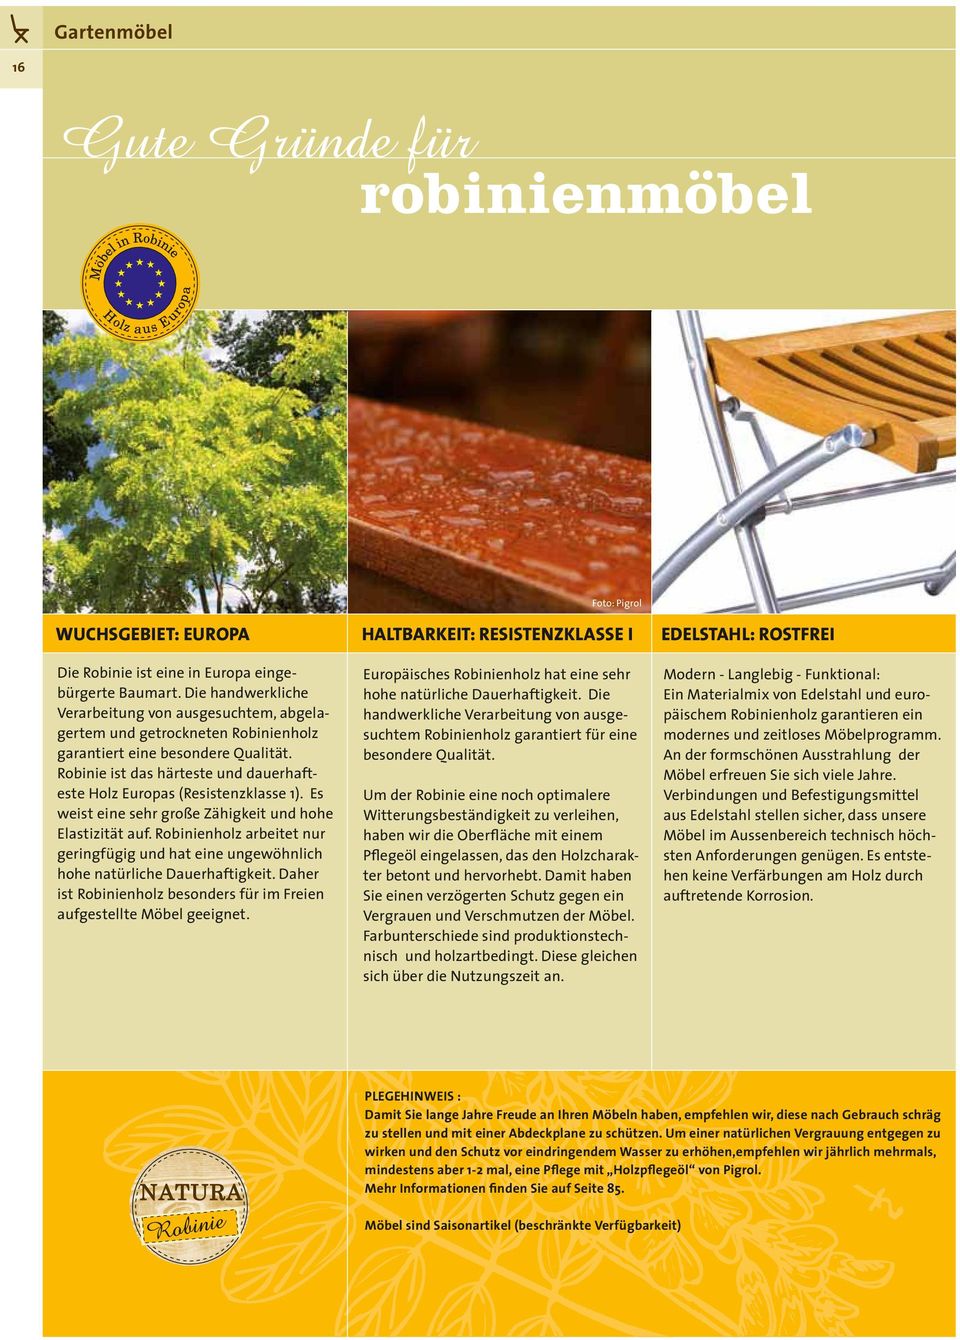 Robinie ist das härteste und dauerhafteste Holz Europas (Resistenzklasse 1). Es weist eine sehr große Zähigkeit und hohe Elastizität auf.